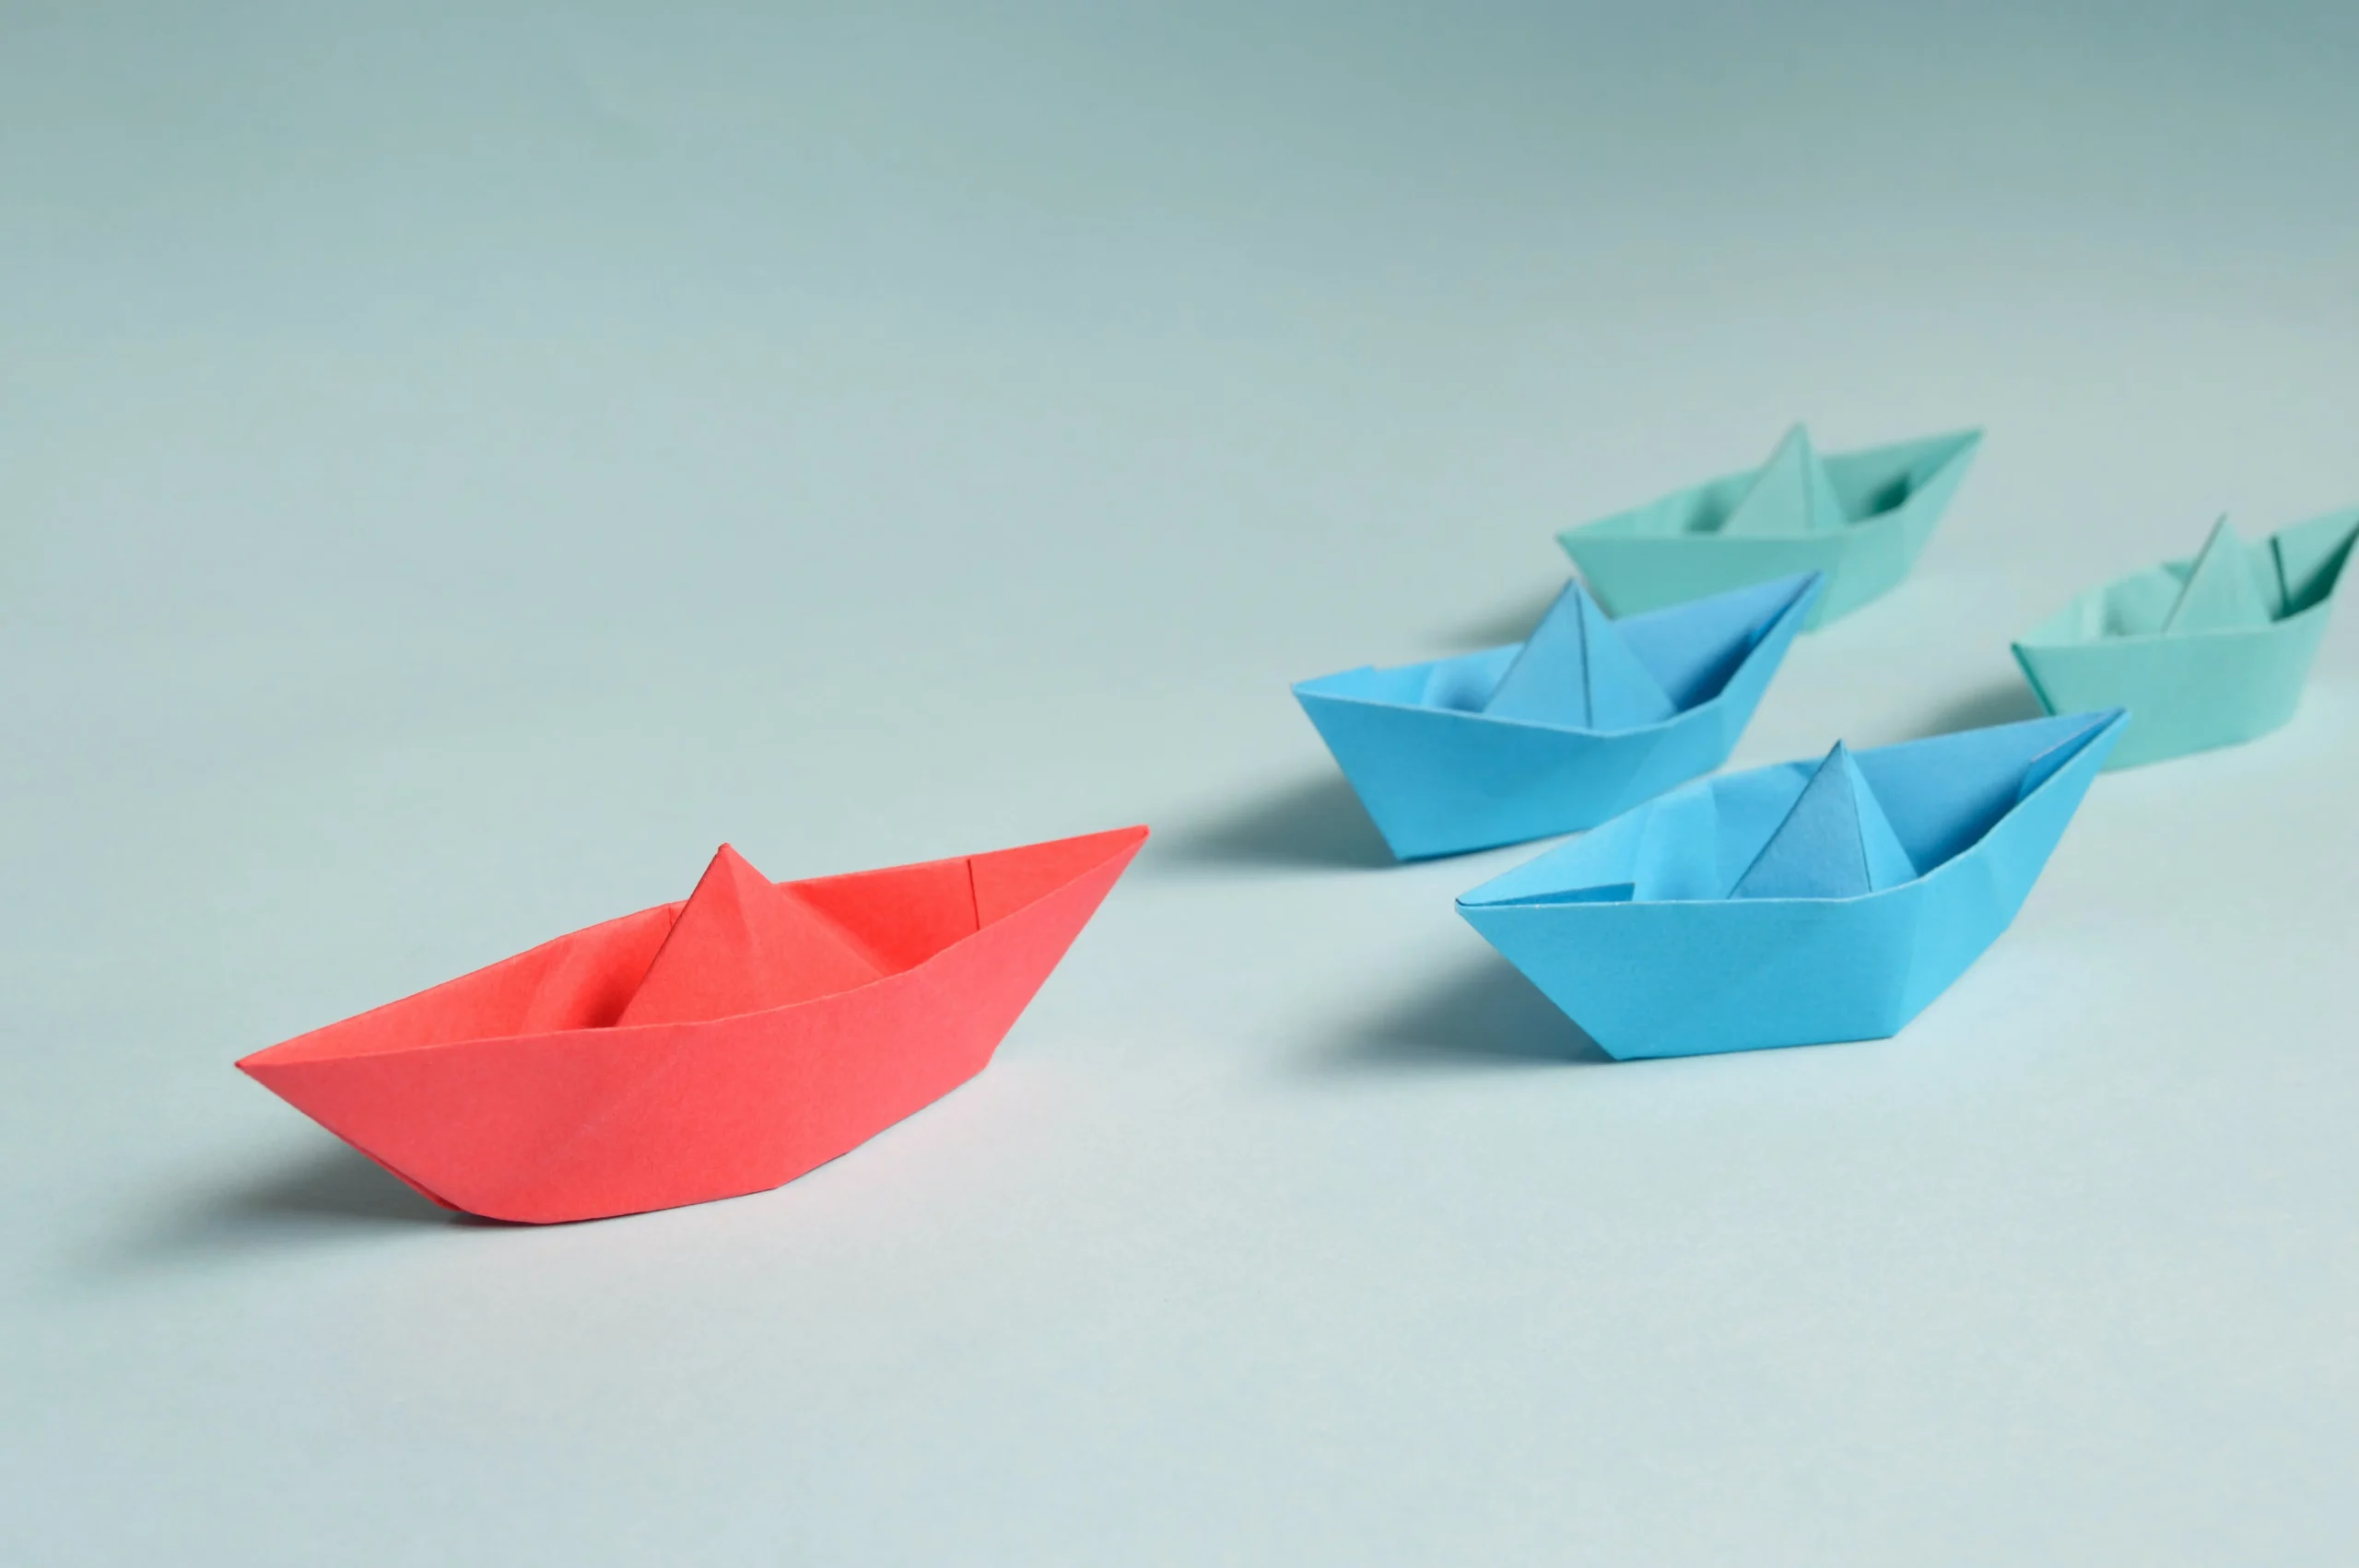 La imagen representa un conjunto de barquitos de papel, siendo liderados por un barco rojo, dirigiéndose para adelante